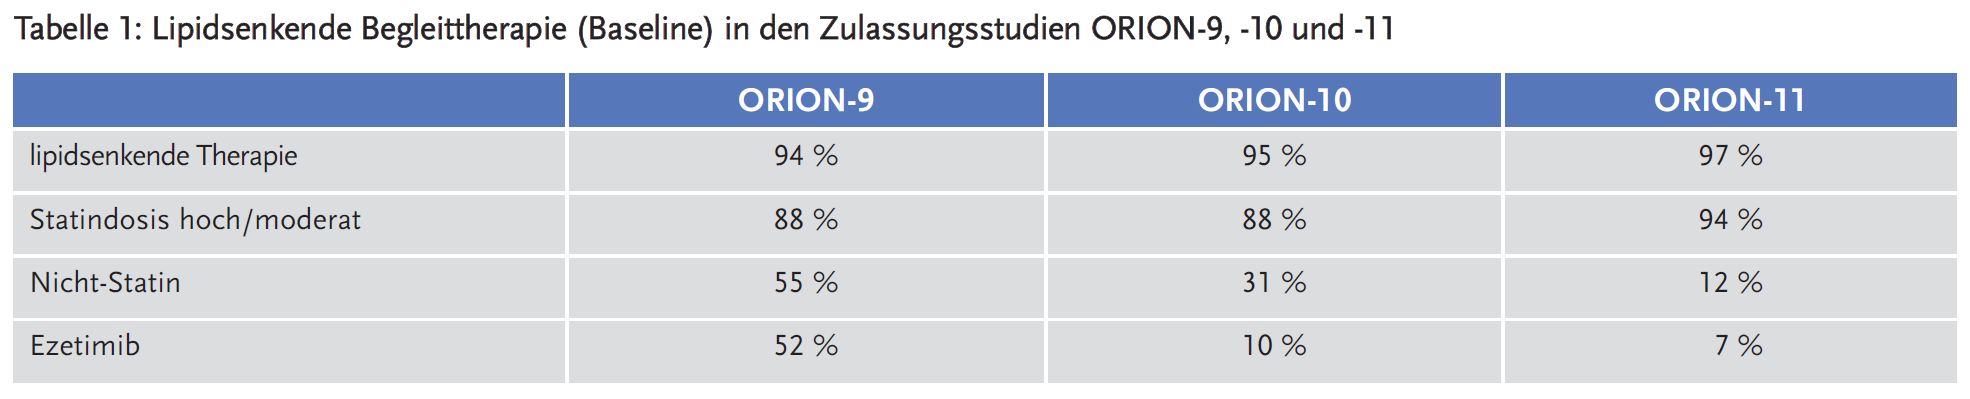 Tabelle 1: Lipidsenkende Begleittherapie (Baseline) in den Zulassungsstudien ORION-9, -10 und -11